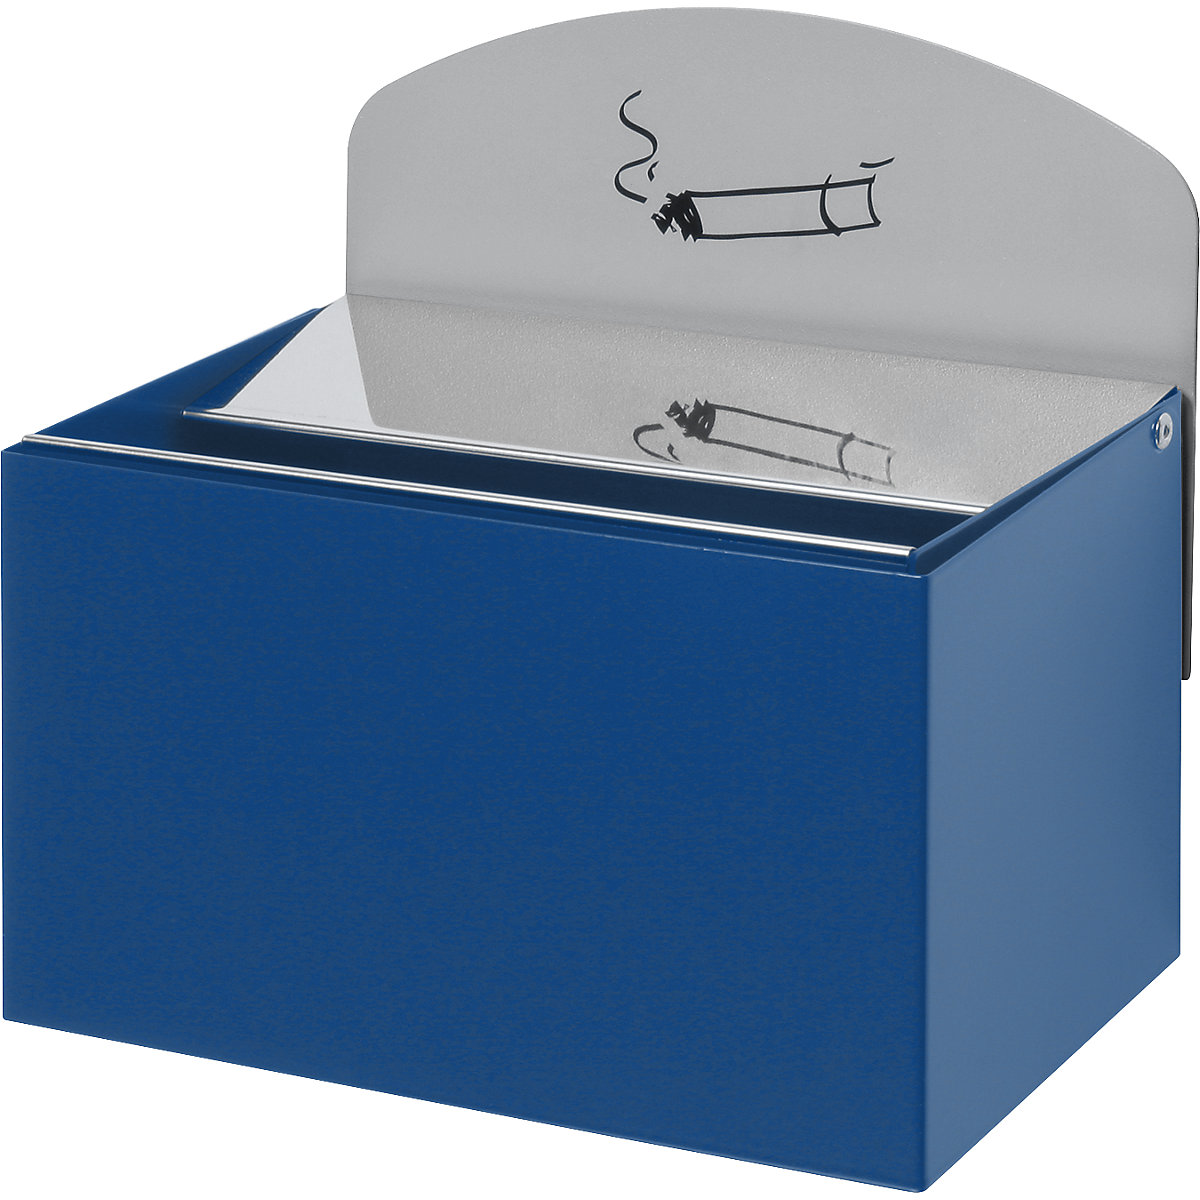 Nástěnný popelník s informační tabulkou – VAR, v x š x h 125 x 200 x 125 mm, ocelový plech, enciánová modrá